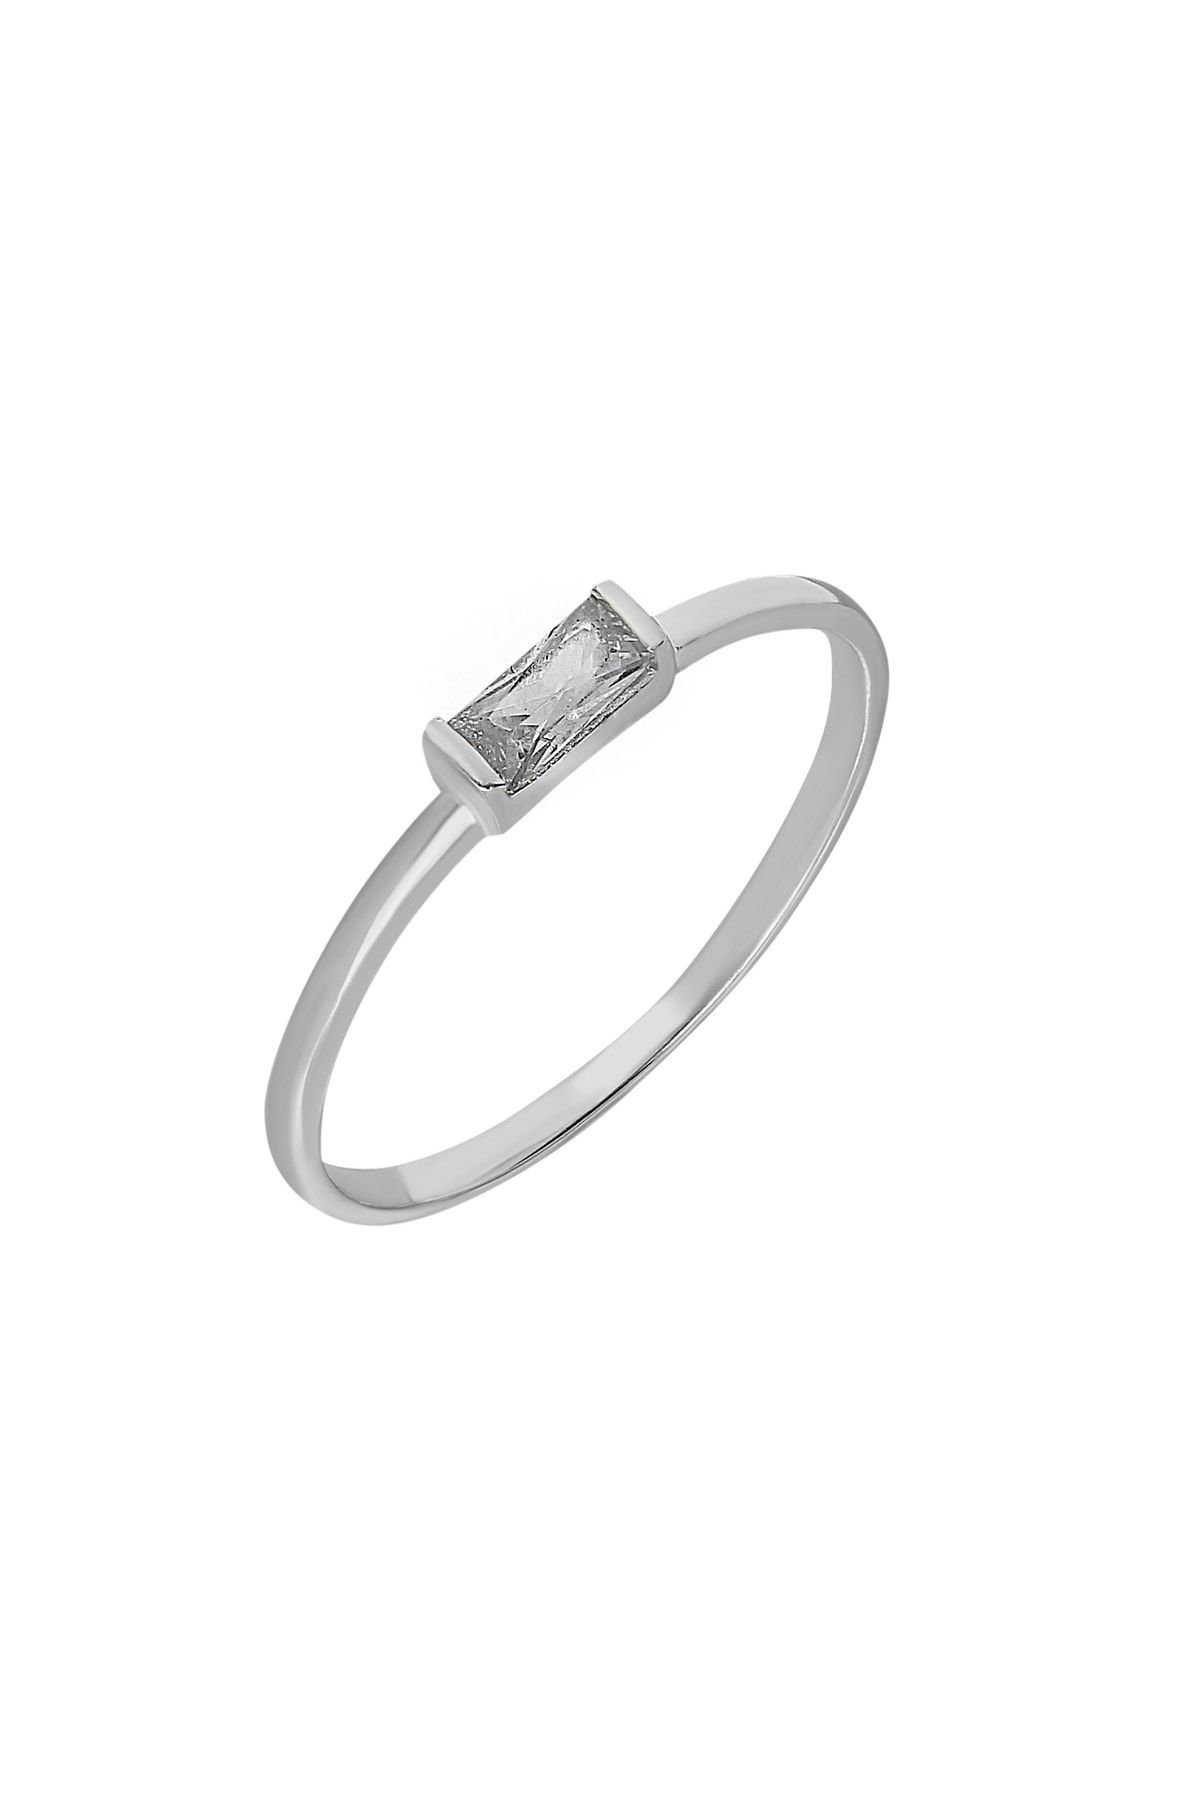 Chavin Gümüş Taşlı Kadın Yüzük Mini Eklem Yüzüğü Ed80by